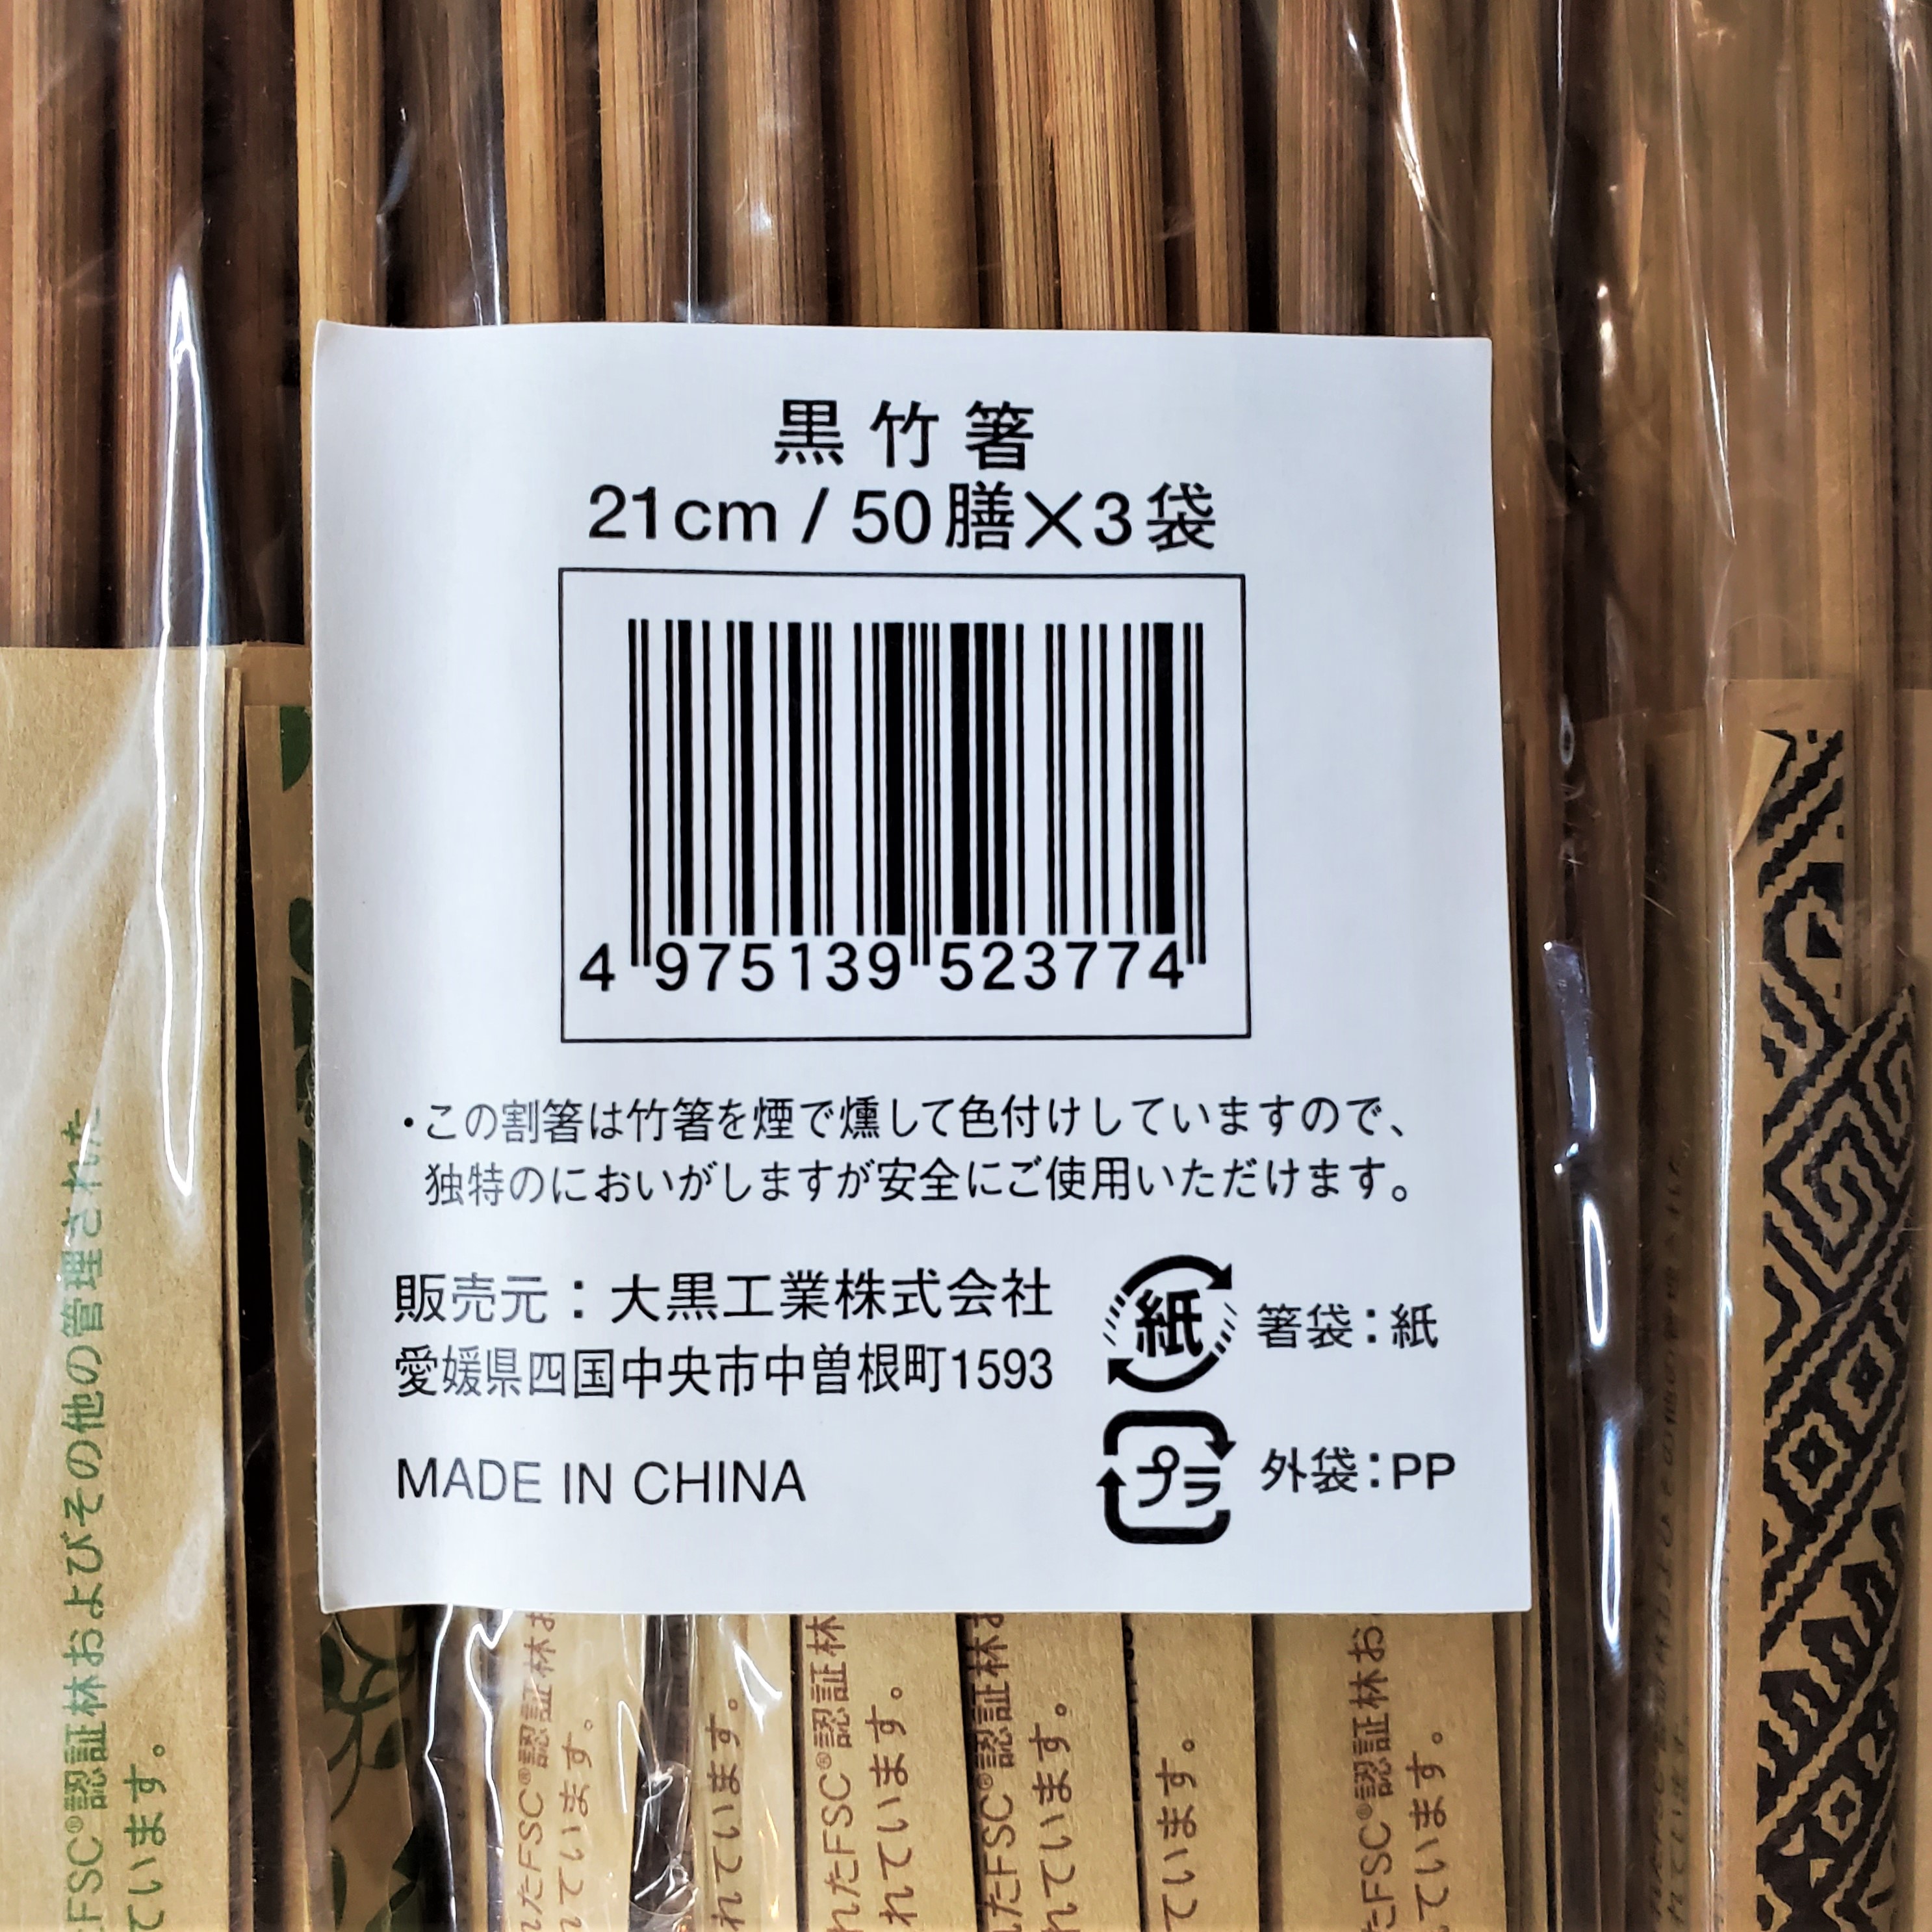 市場 送料無料 21cm 使い捨て箸 50膳×3パック 150膳セット 黒竹箸3 竹製の割り箸 割り箸